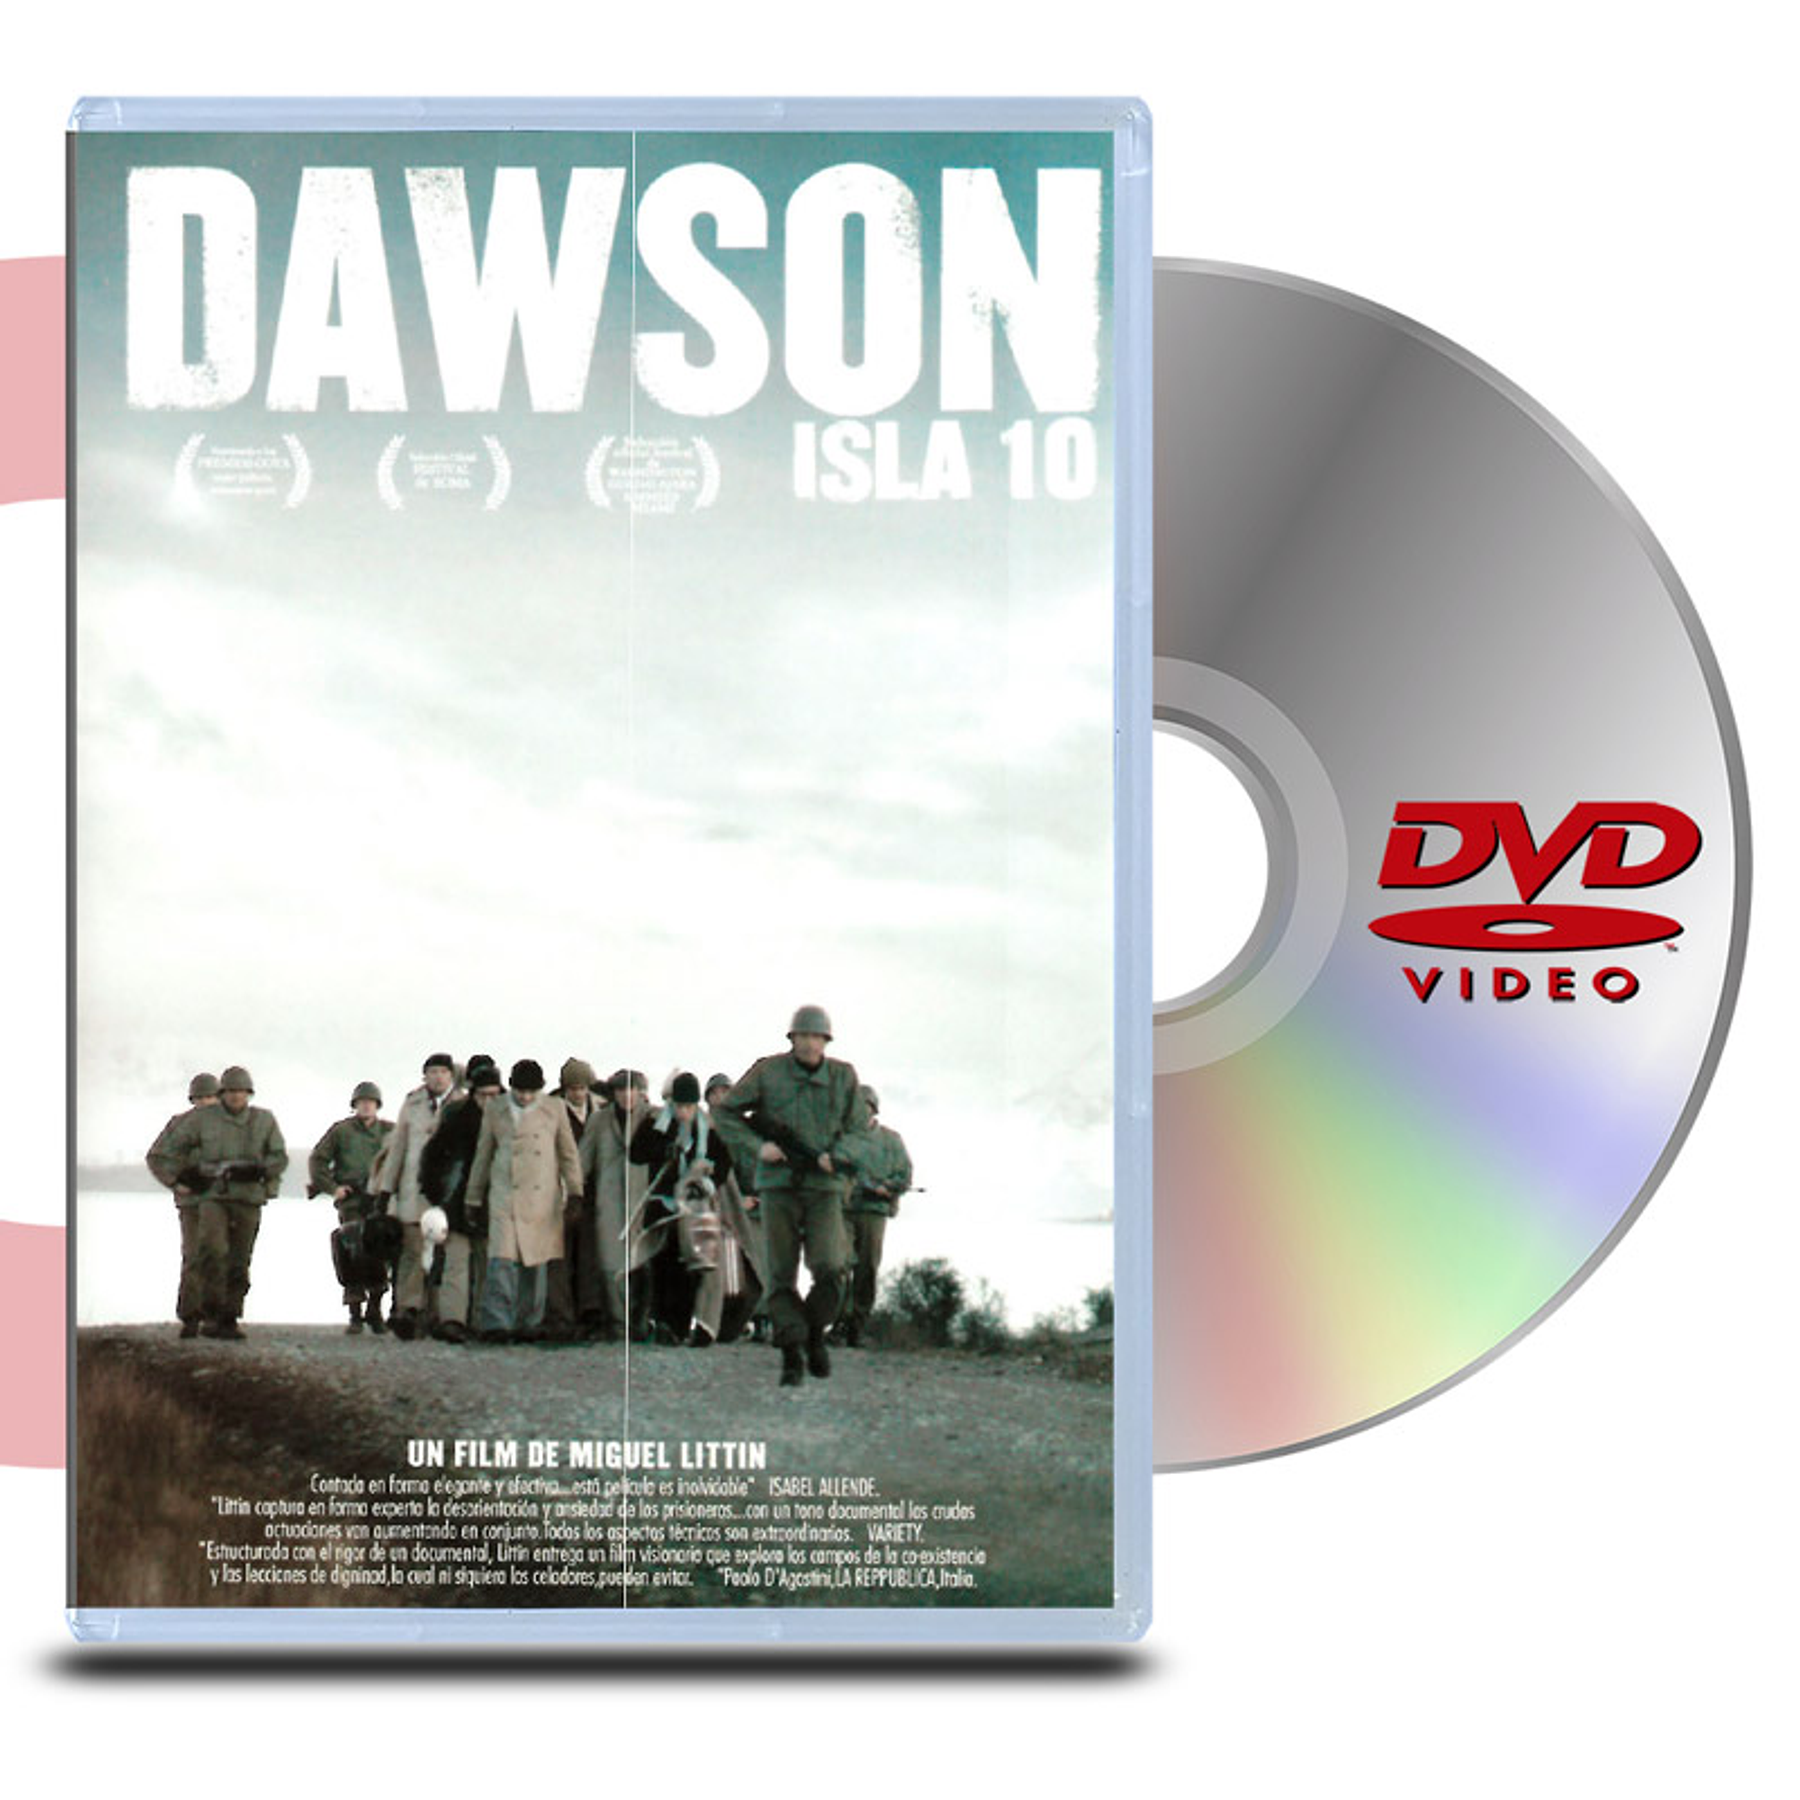 DVD DAWSON ISLA 10